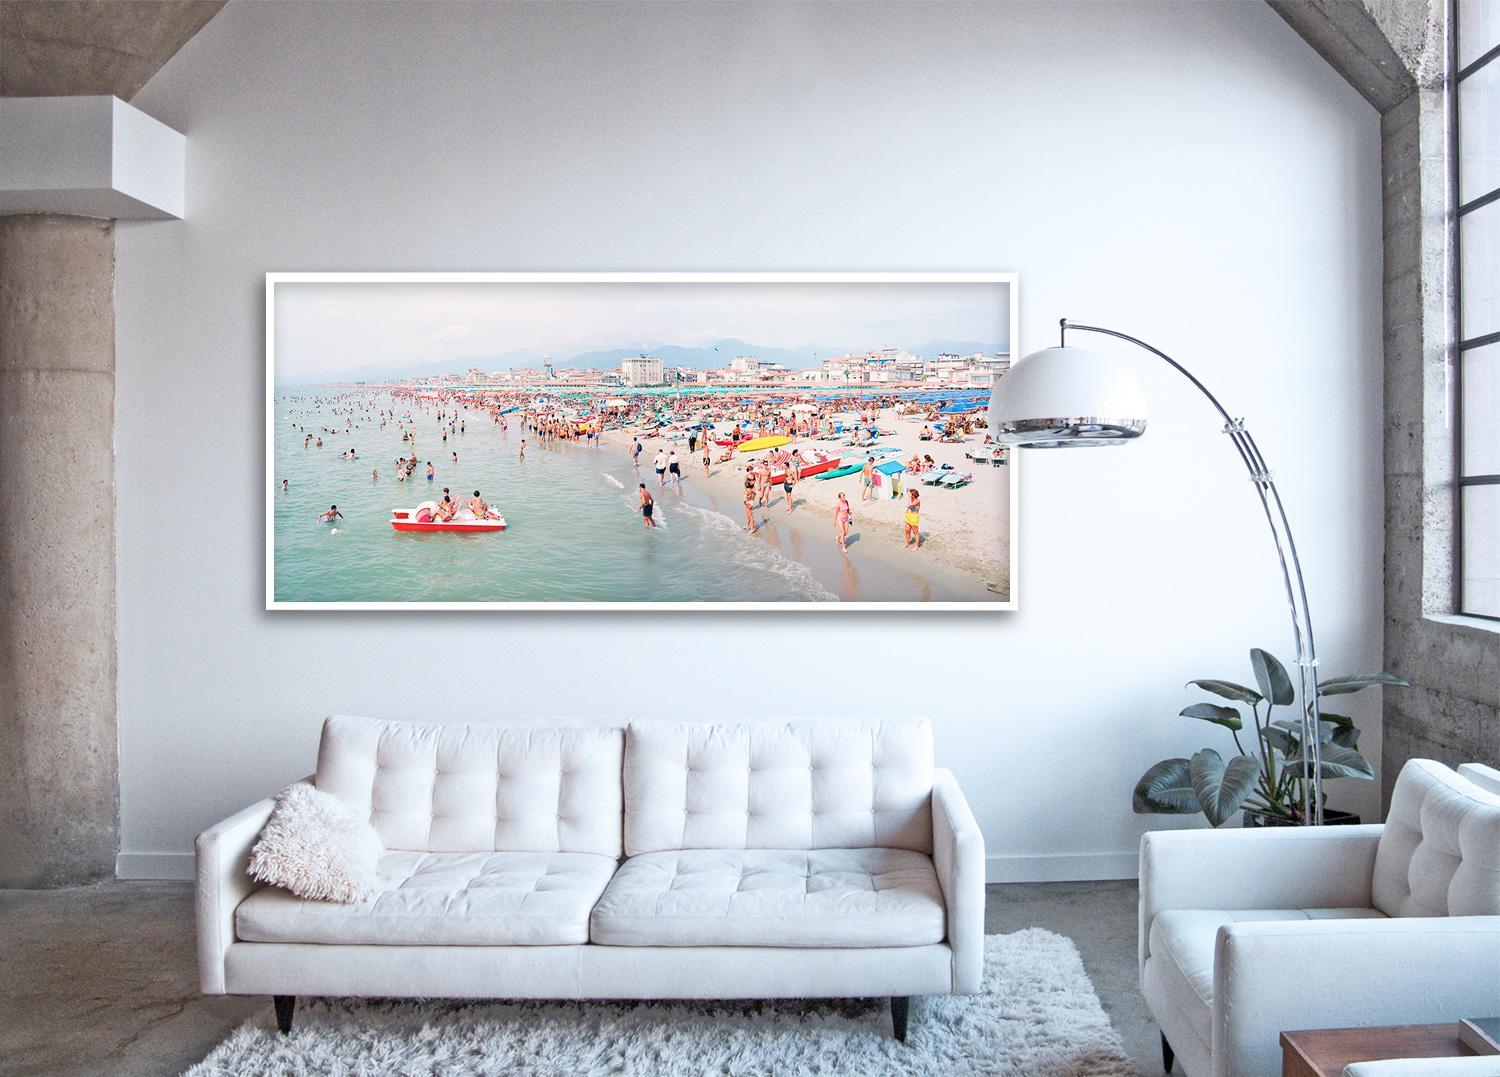 Viareggio Pano (framed) - unique panoramic photograph of Mediterranean beach  - Photograph by Massimo Vitali